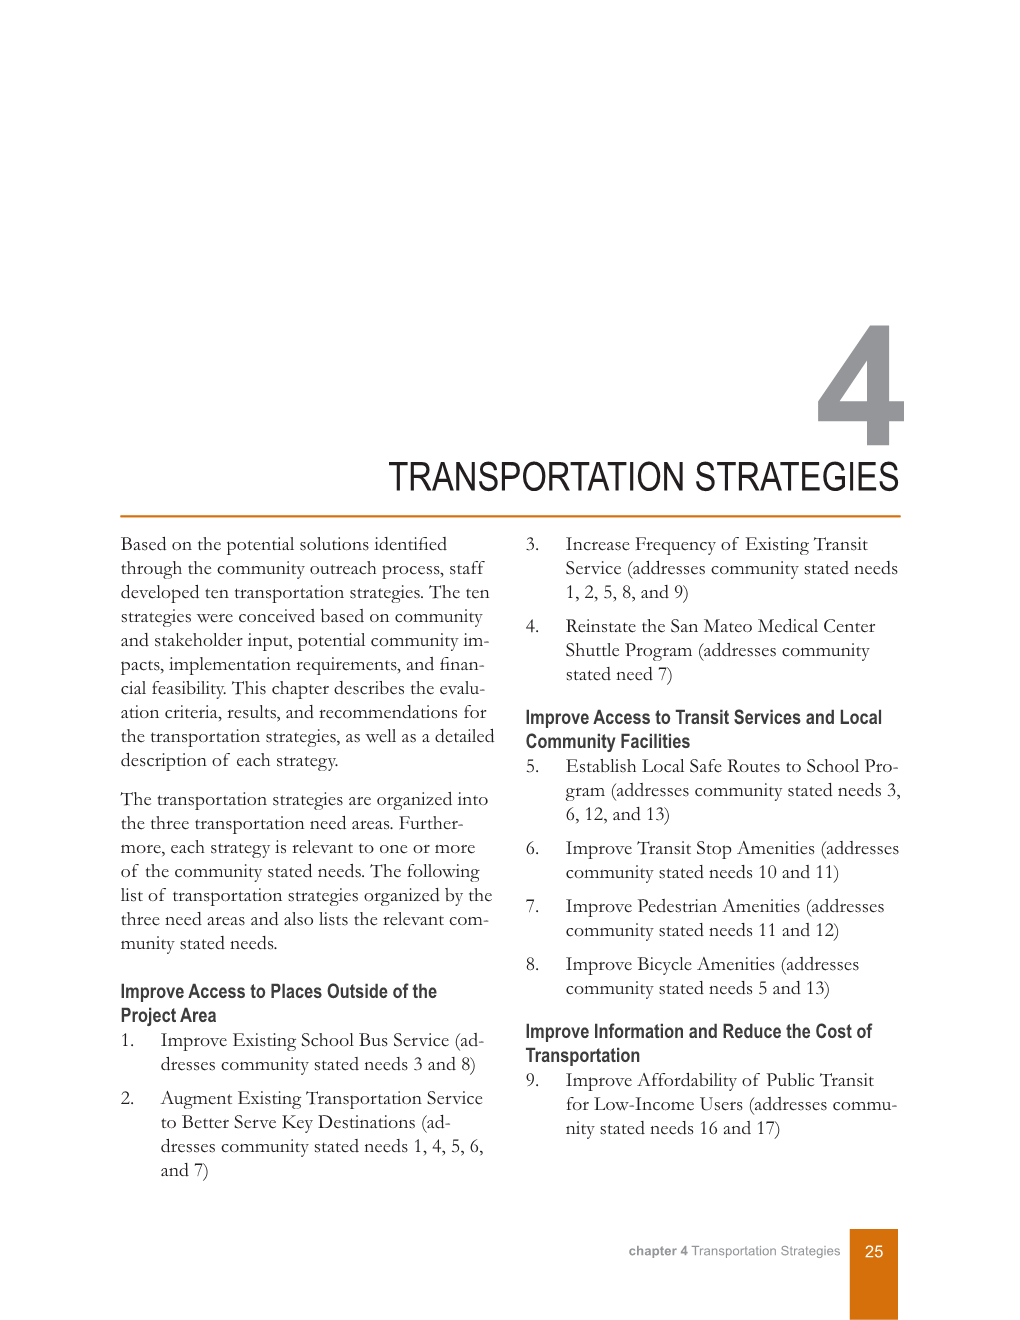 Transportation Strategies